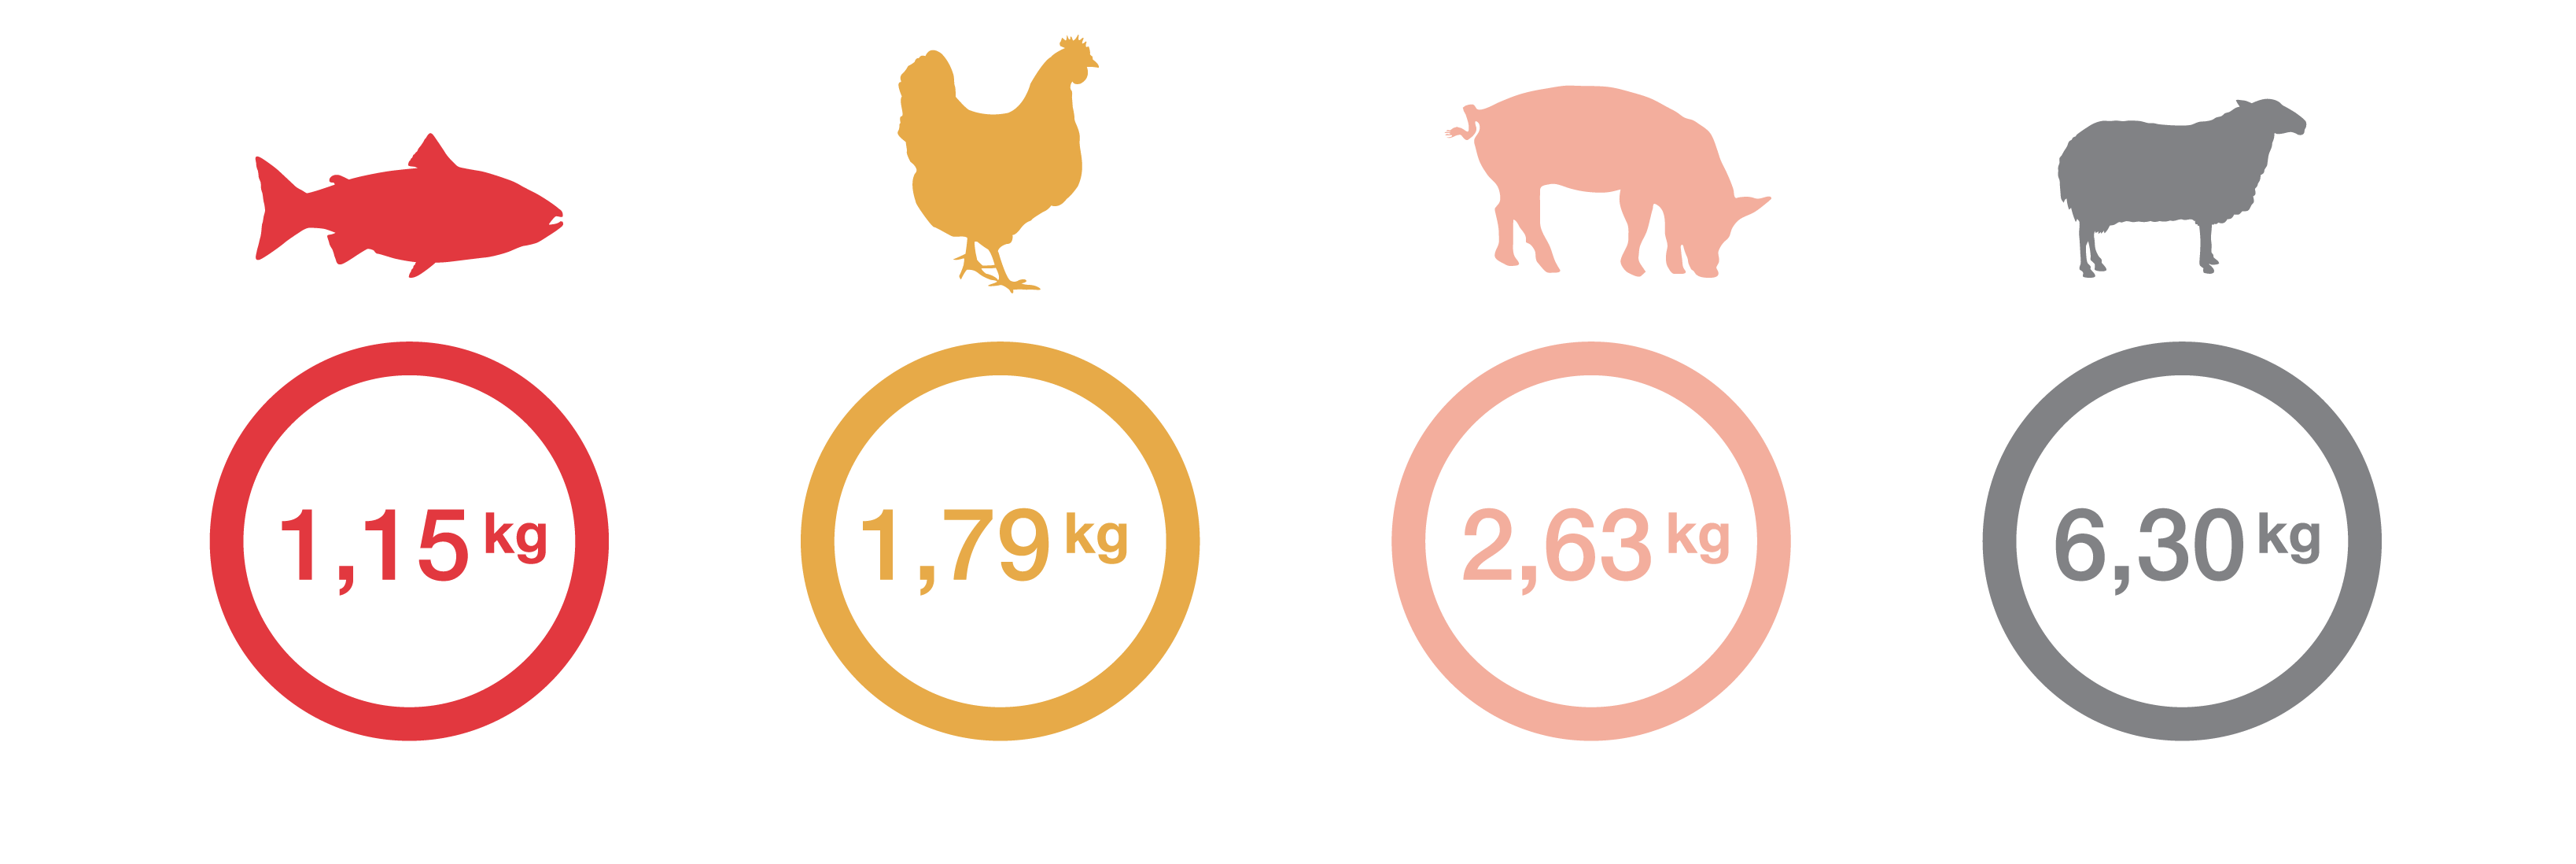 Khối lượng tiêu thụ thức ăn trong nuôi gà bị ảnh hưởng bởi yếu tố nào?